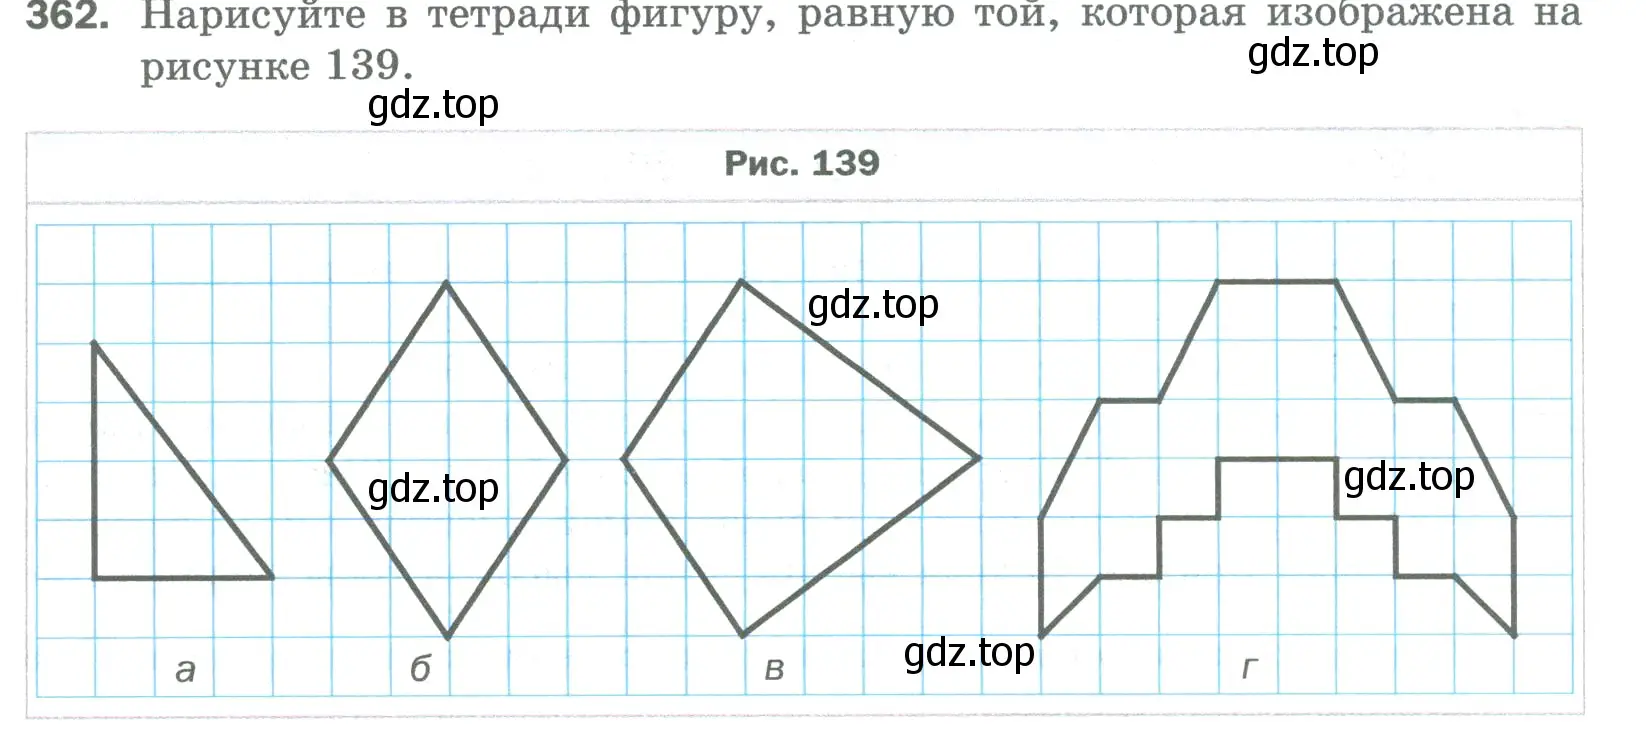 Условие номер 362 (страница 95) гдз по математике 5 класс Мерзляк, Полонский, учебник